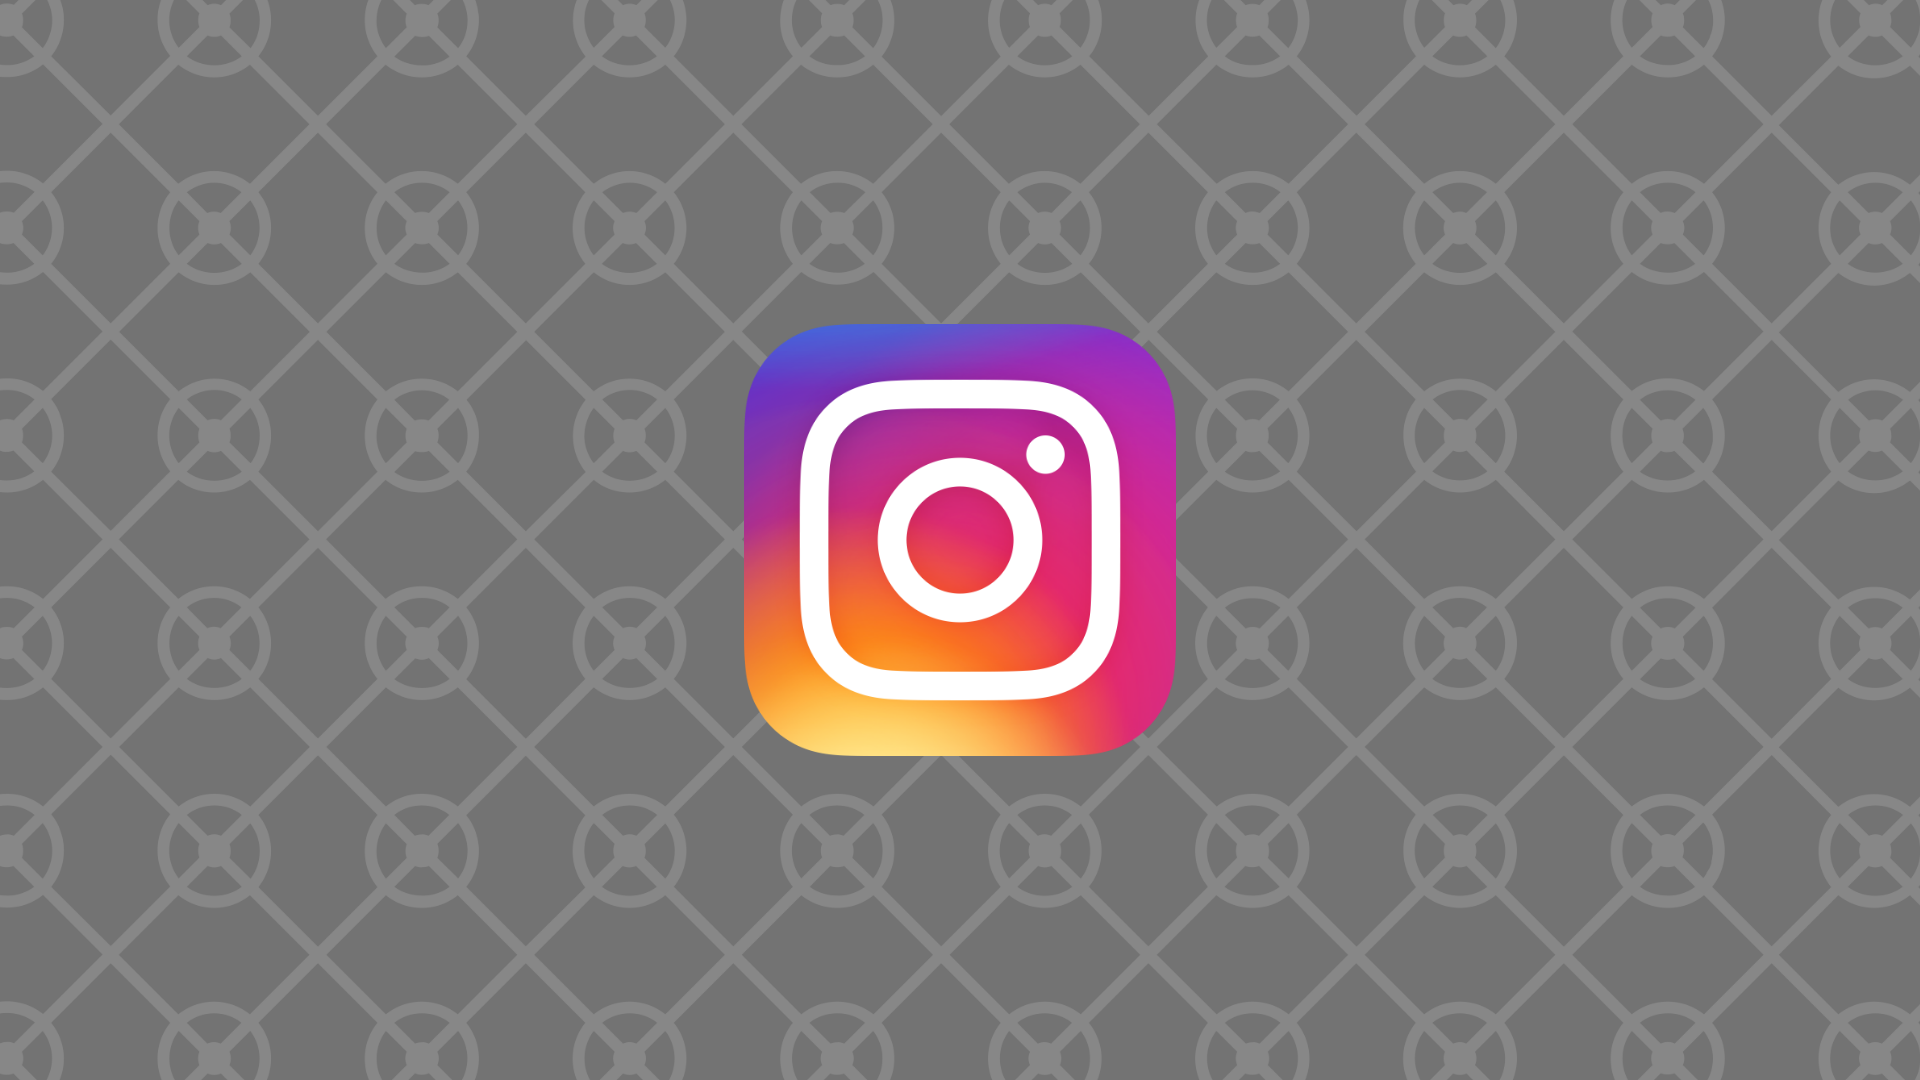 How To Make Instagram Stories Longer